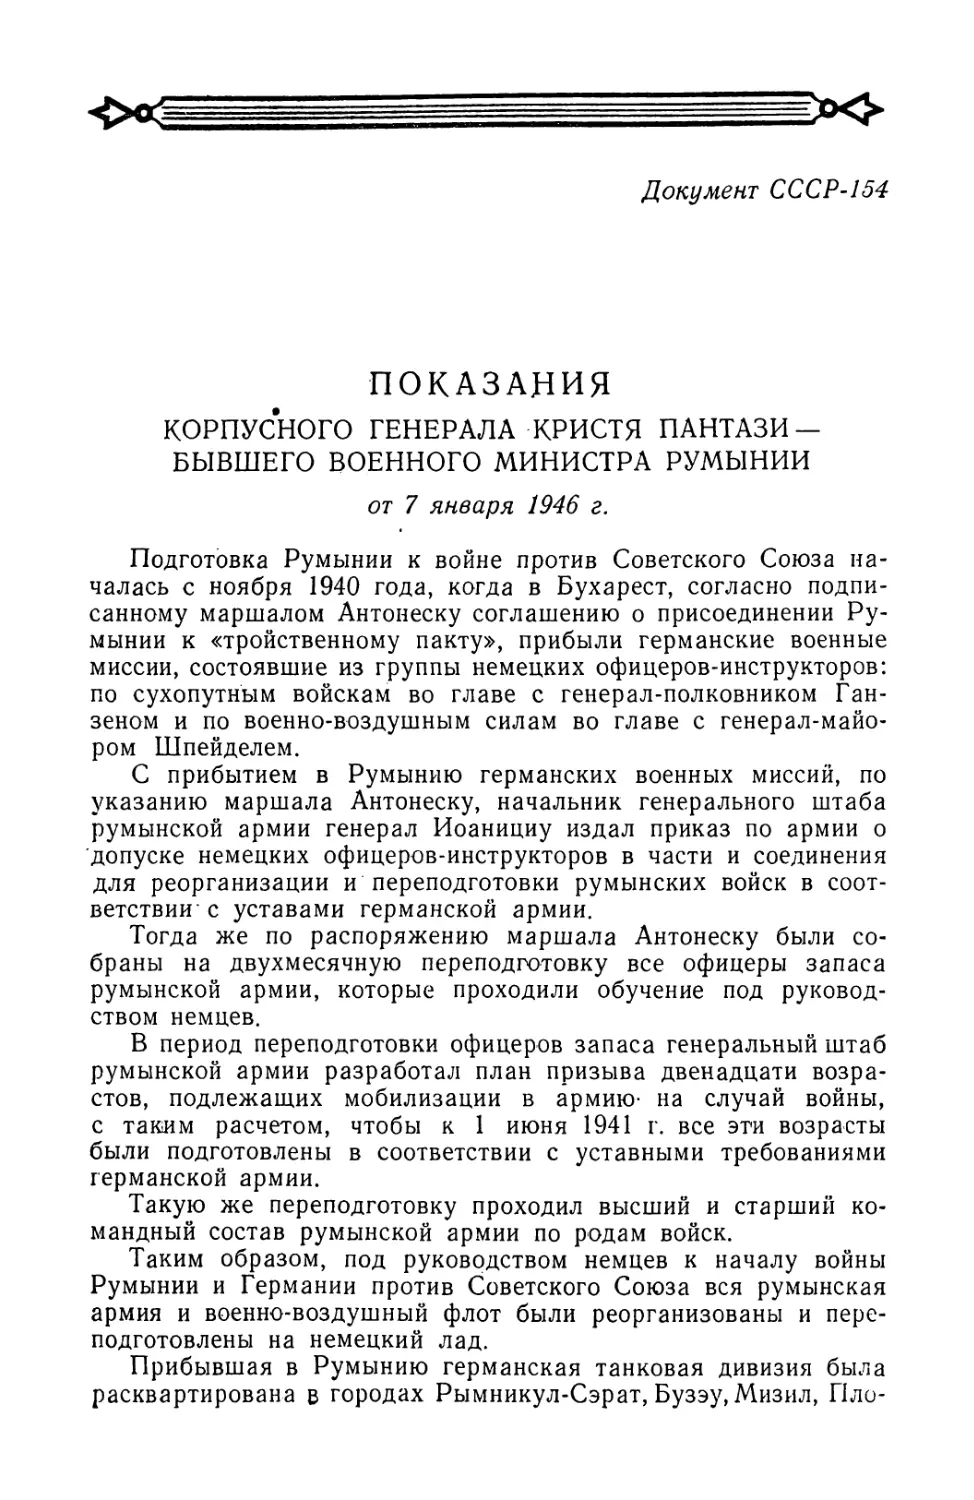 Показания бывшего военного министра Румынии корпусного генерала Кристя Пантази от 7 января 1946 г.